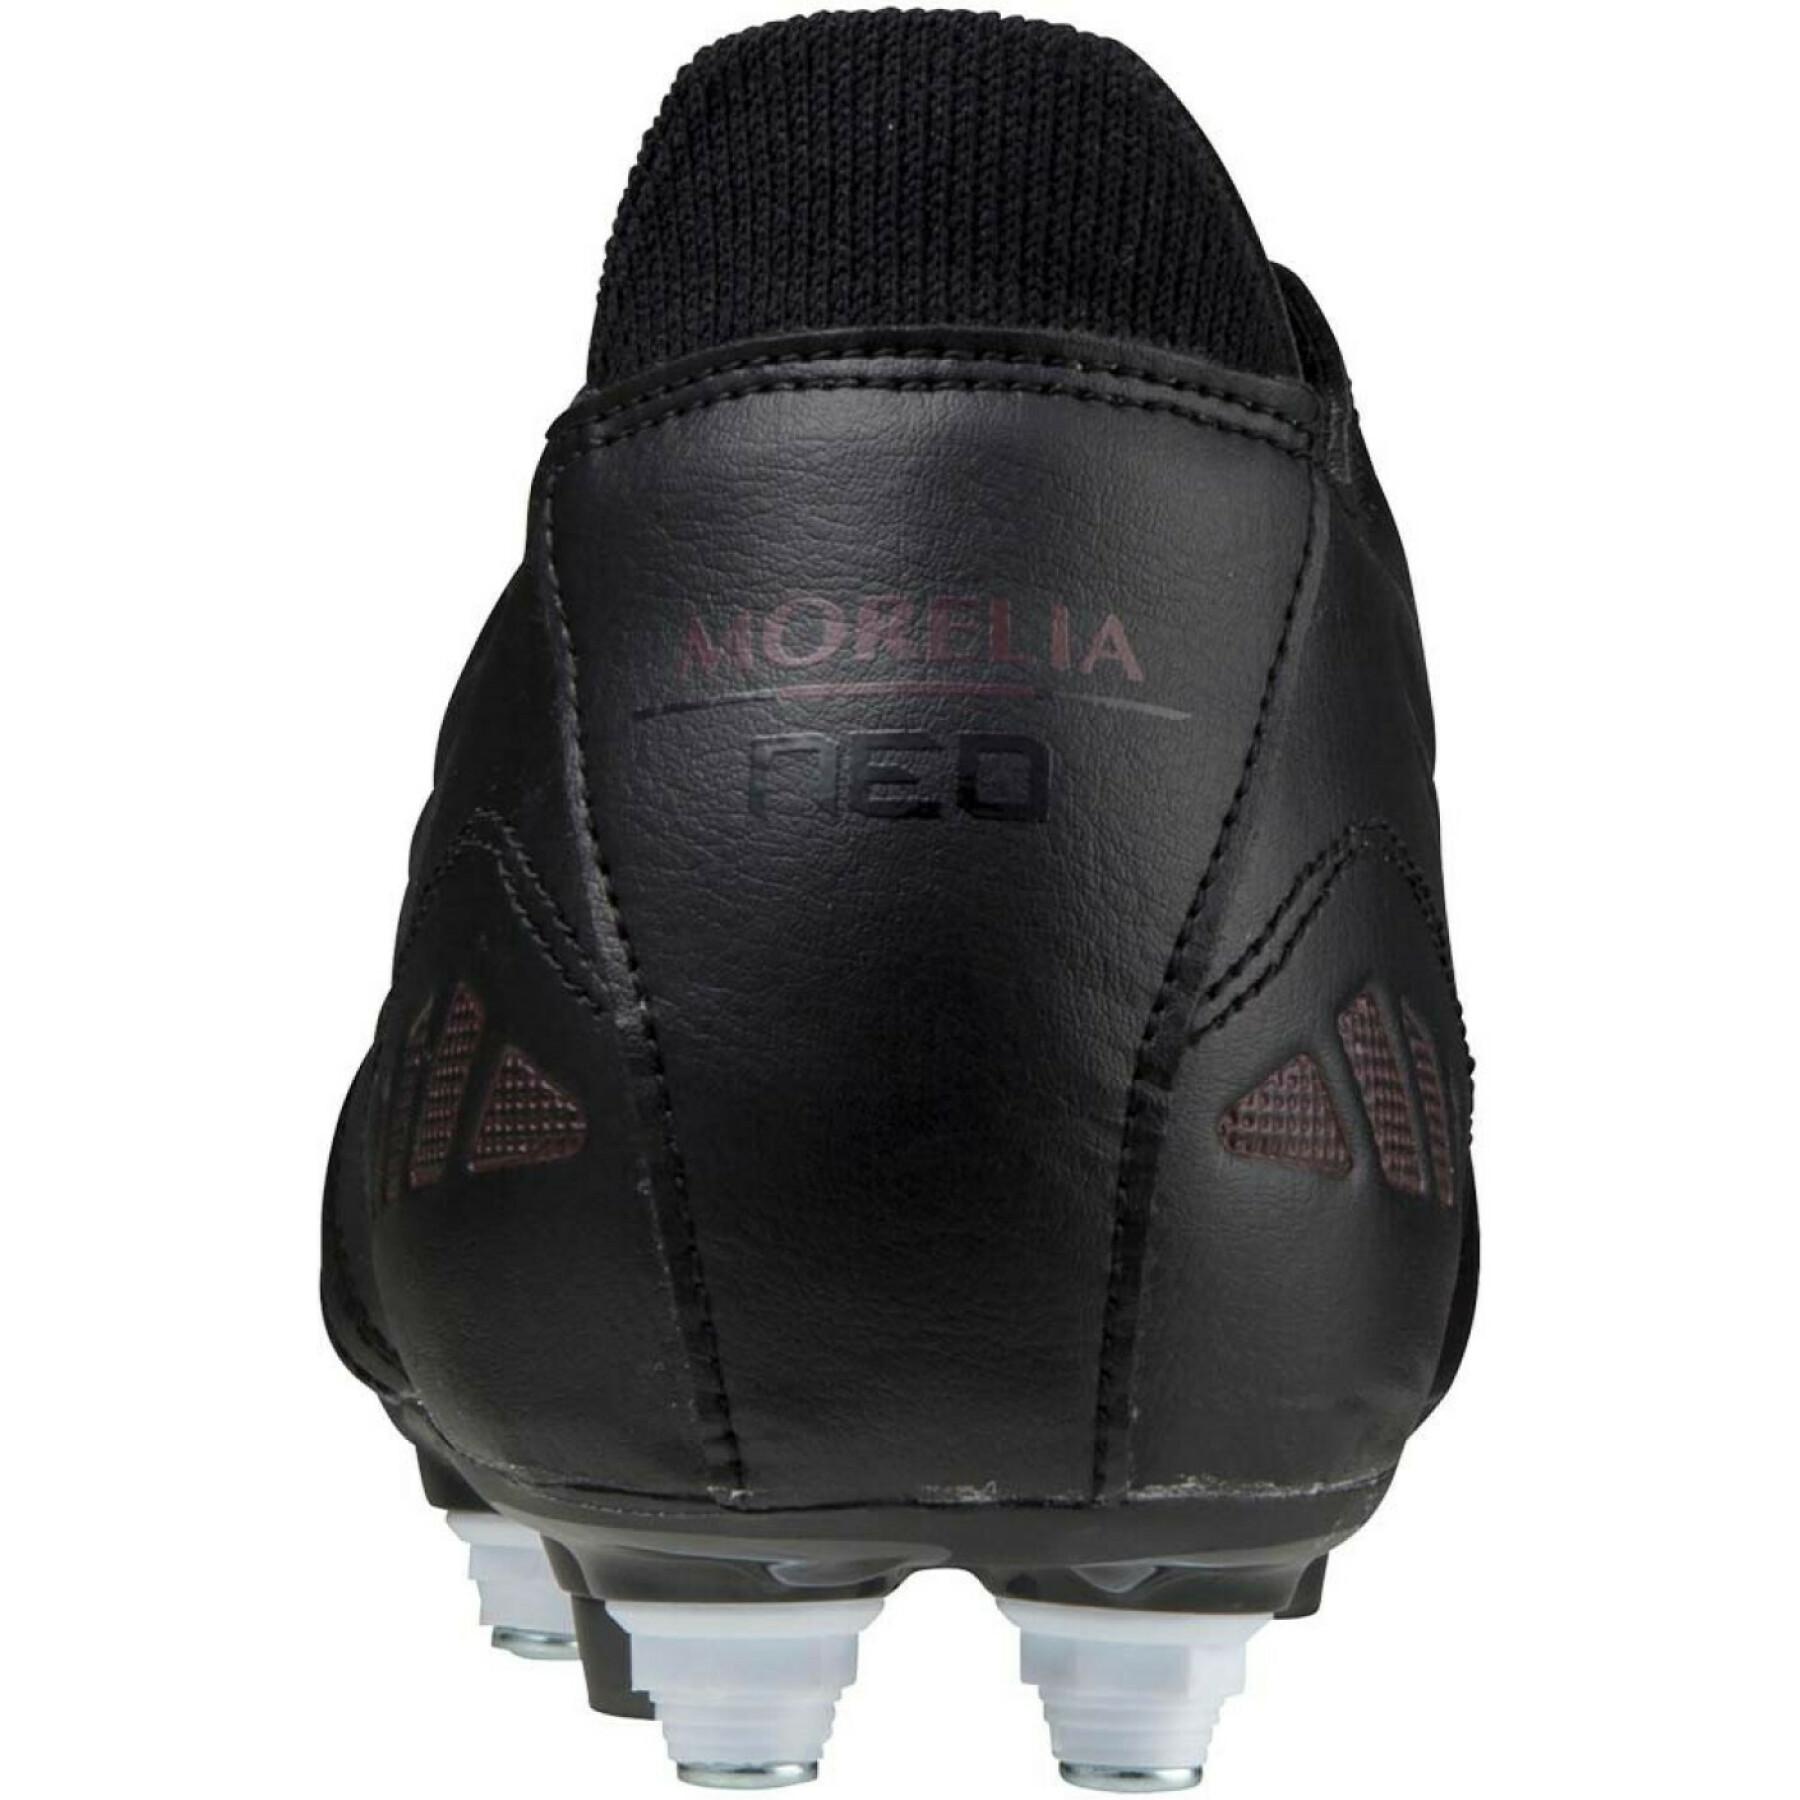 Soccer shoes Mizuno Morelia Neo